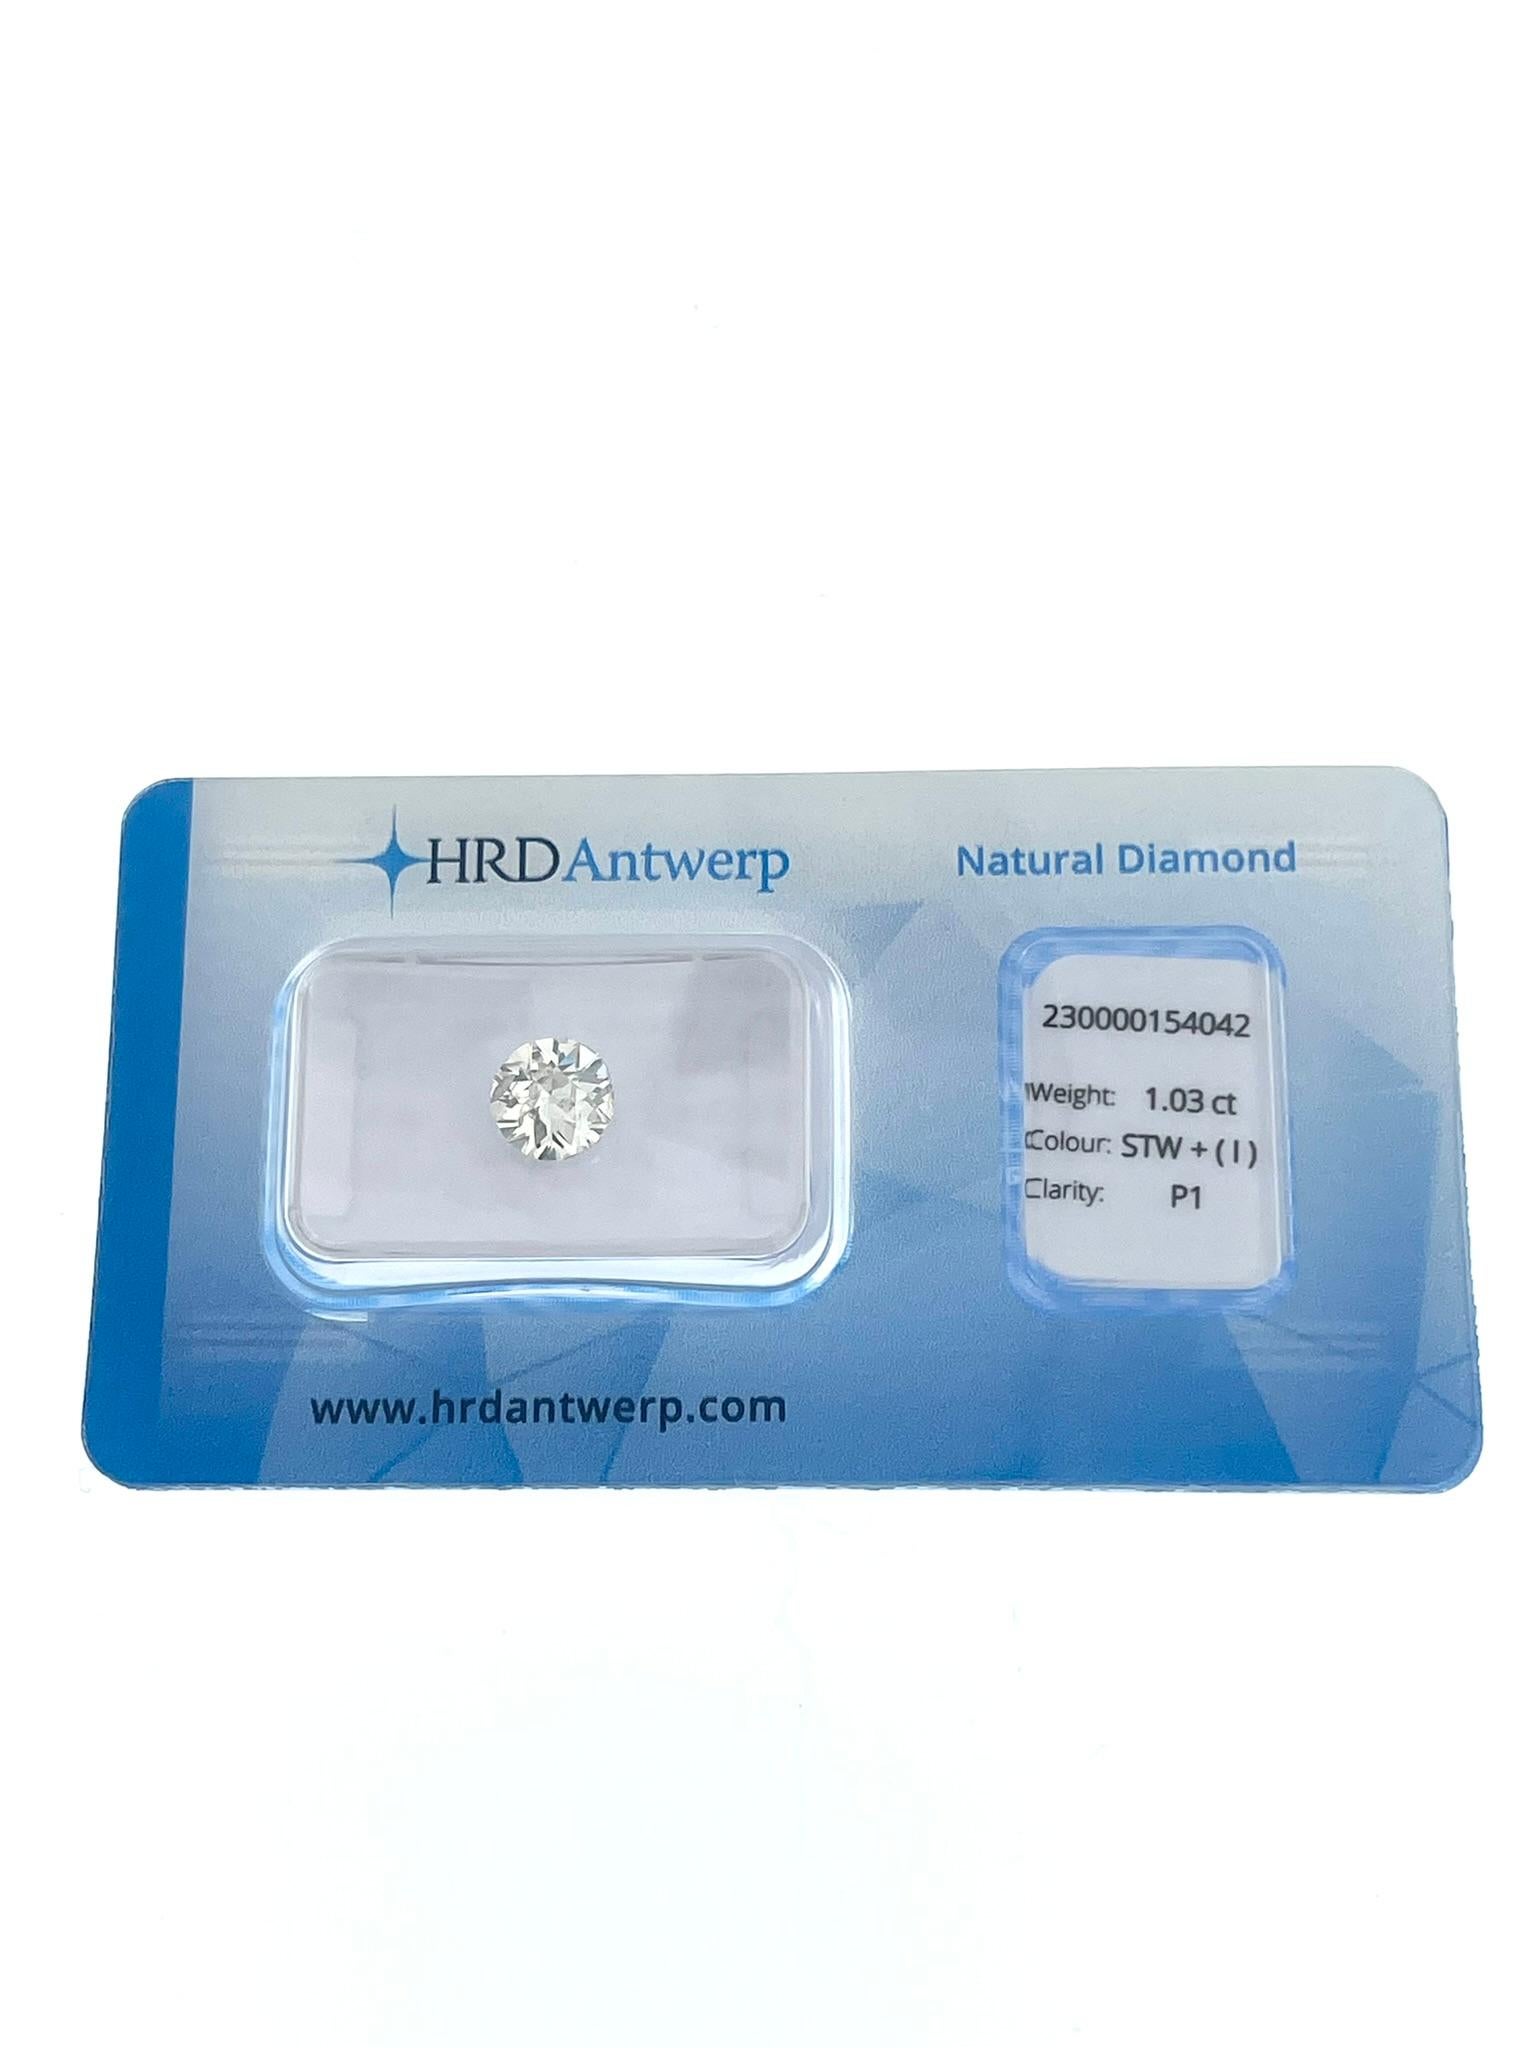 Der HRD-zertifizierte 1,03ct Old-European Cut-Diamant ist ein fesselnder Edelstein, der für seinen Vintage-Charme und seine zeitlose Schönheit bekannt ist.

Dieser Diamant hat ein Gewicht von 1,03 Karat und ist damit ein großer und beeindruckender